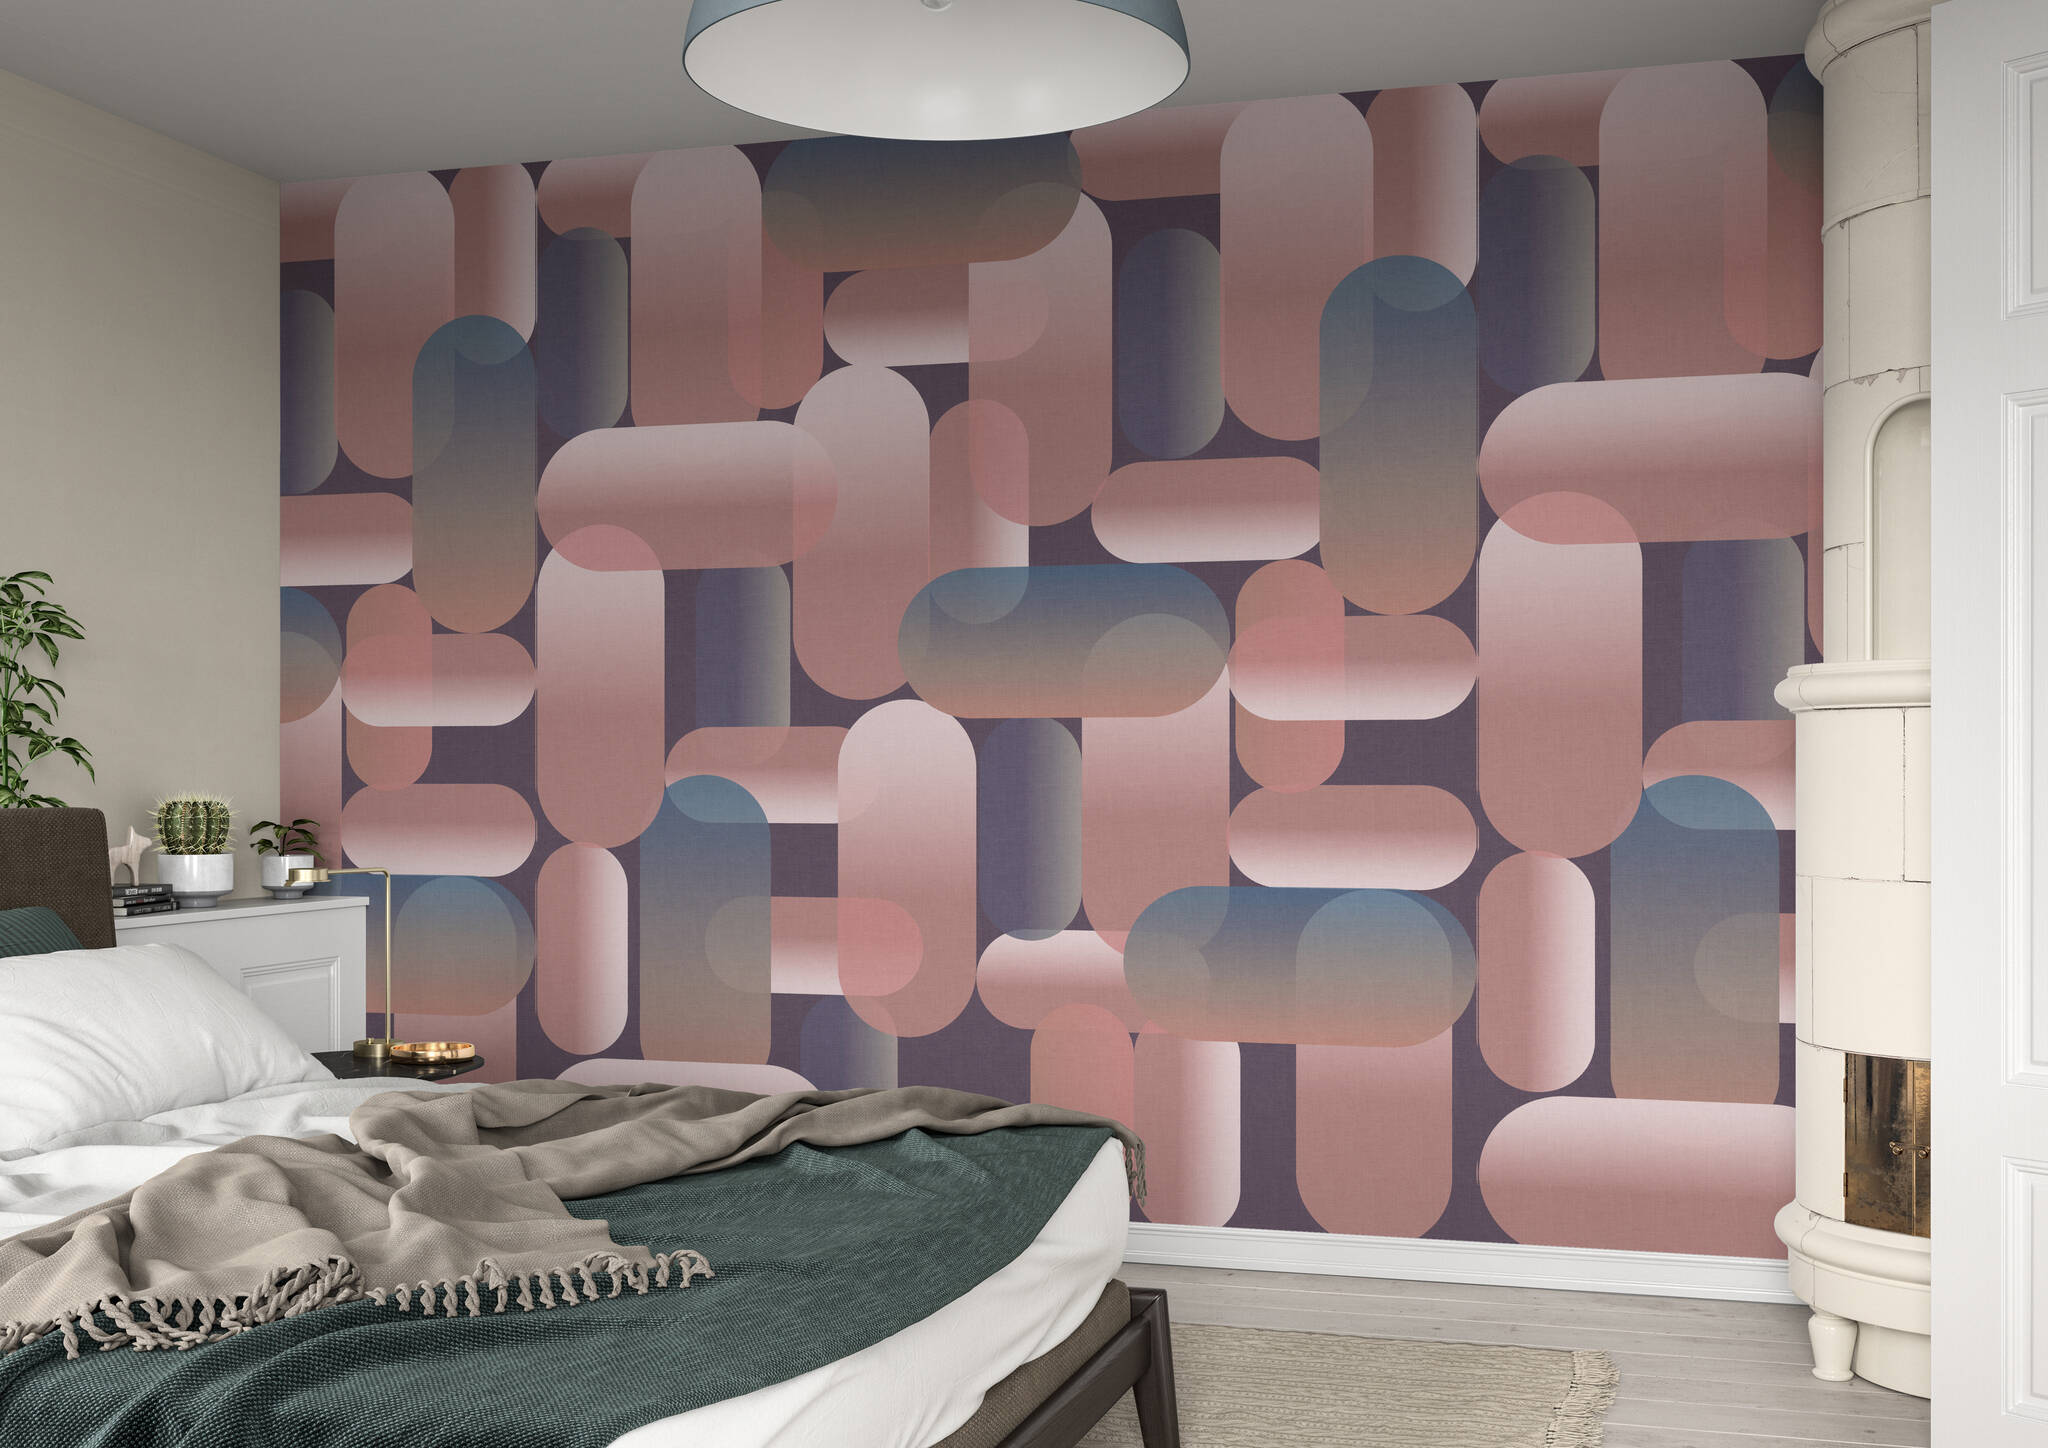 Schlafzimmer mit Wandbild - Anleihen aus den 70ern prägen dieses Oval-Muster in eleganten Rosa- und Blau-Tönen